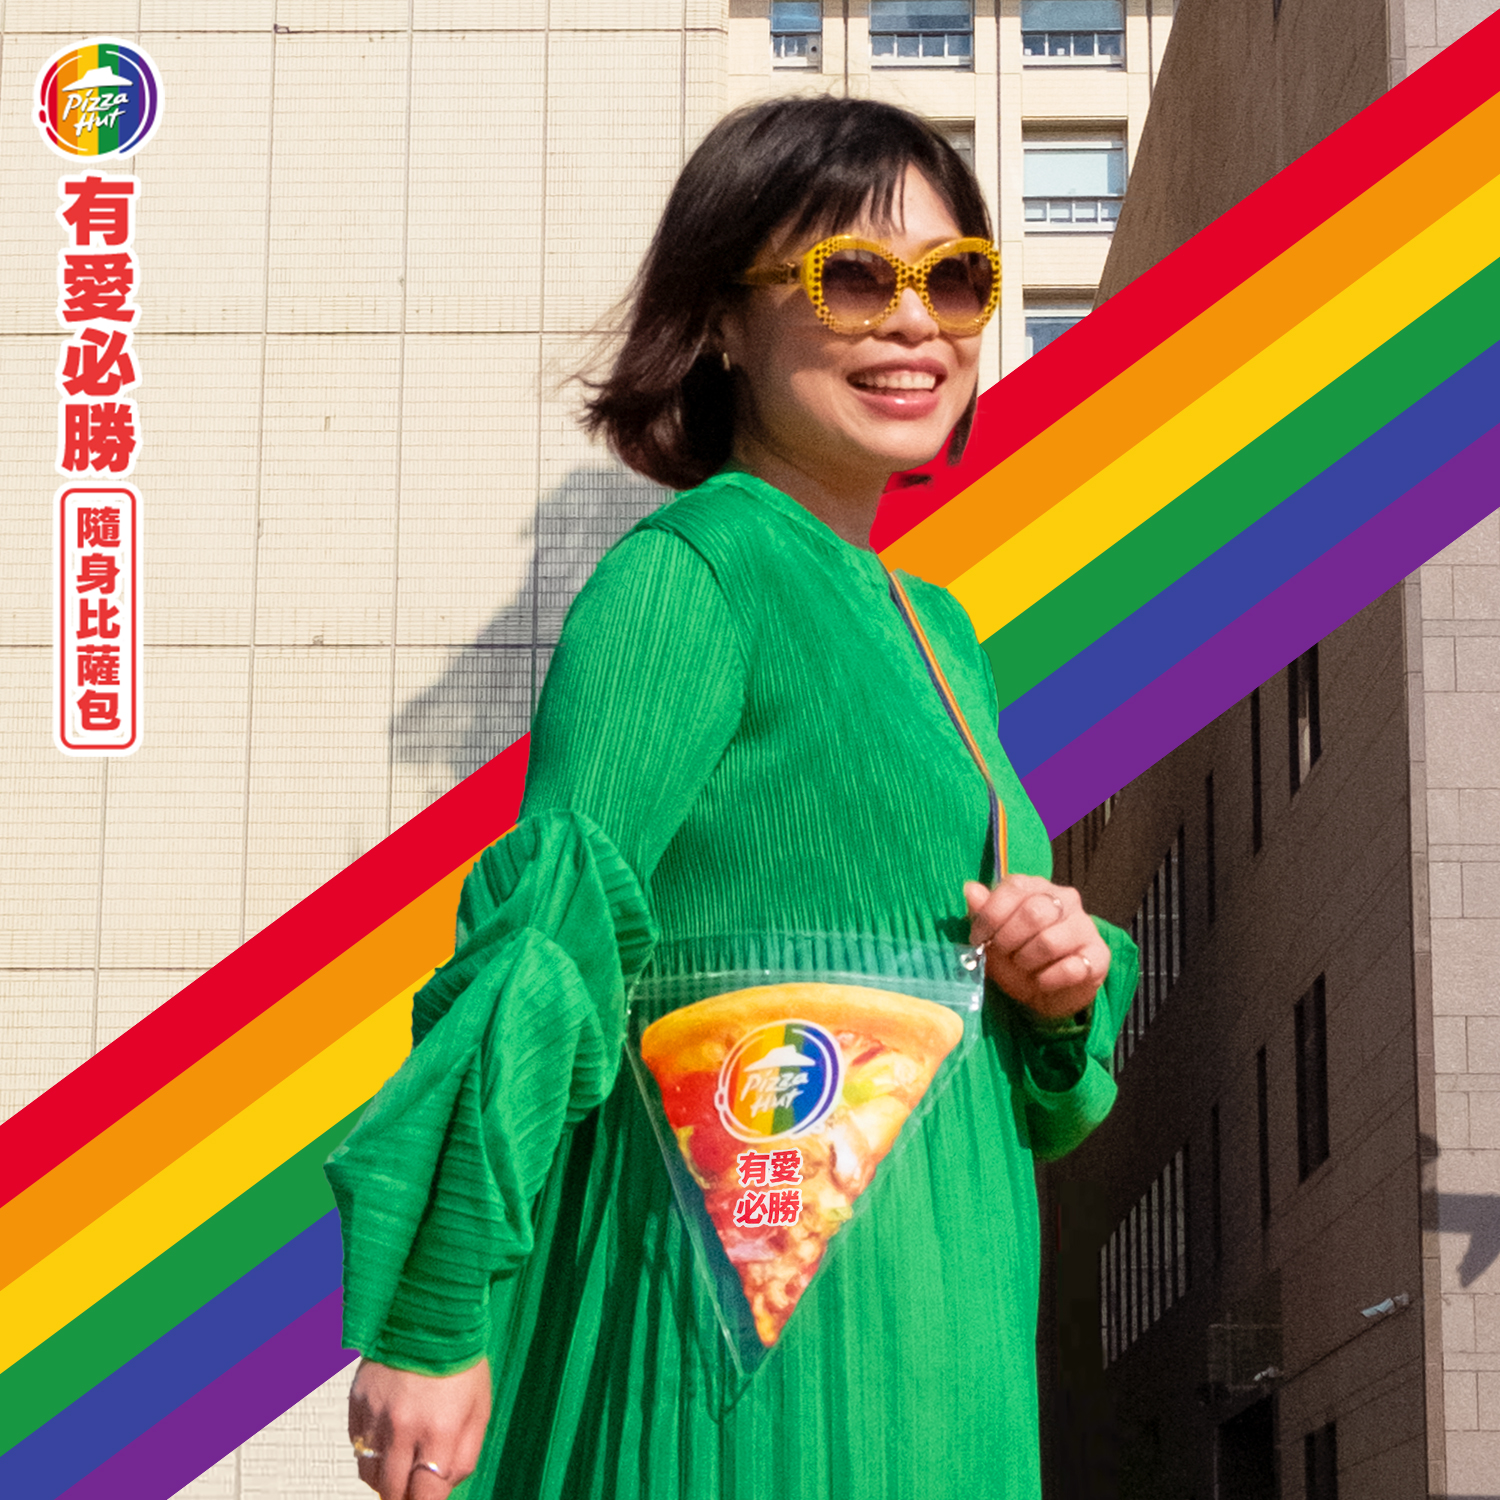 繼愛心造型「有愛必勝比薩」、「有愛必勝六色彩虹盒」後，必勝客今年再度參與「臺灣同志遊行 (Taiwan LGBT Pride)」